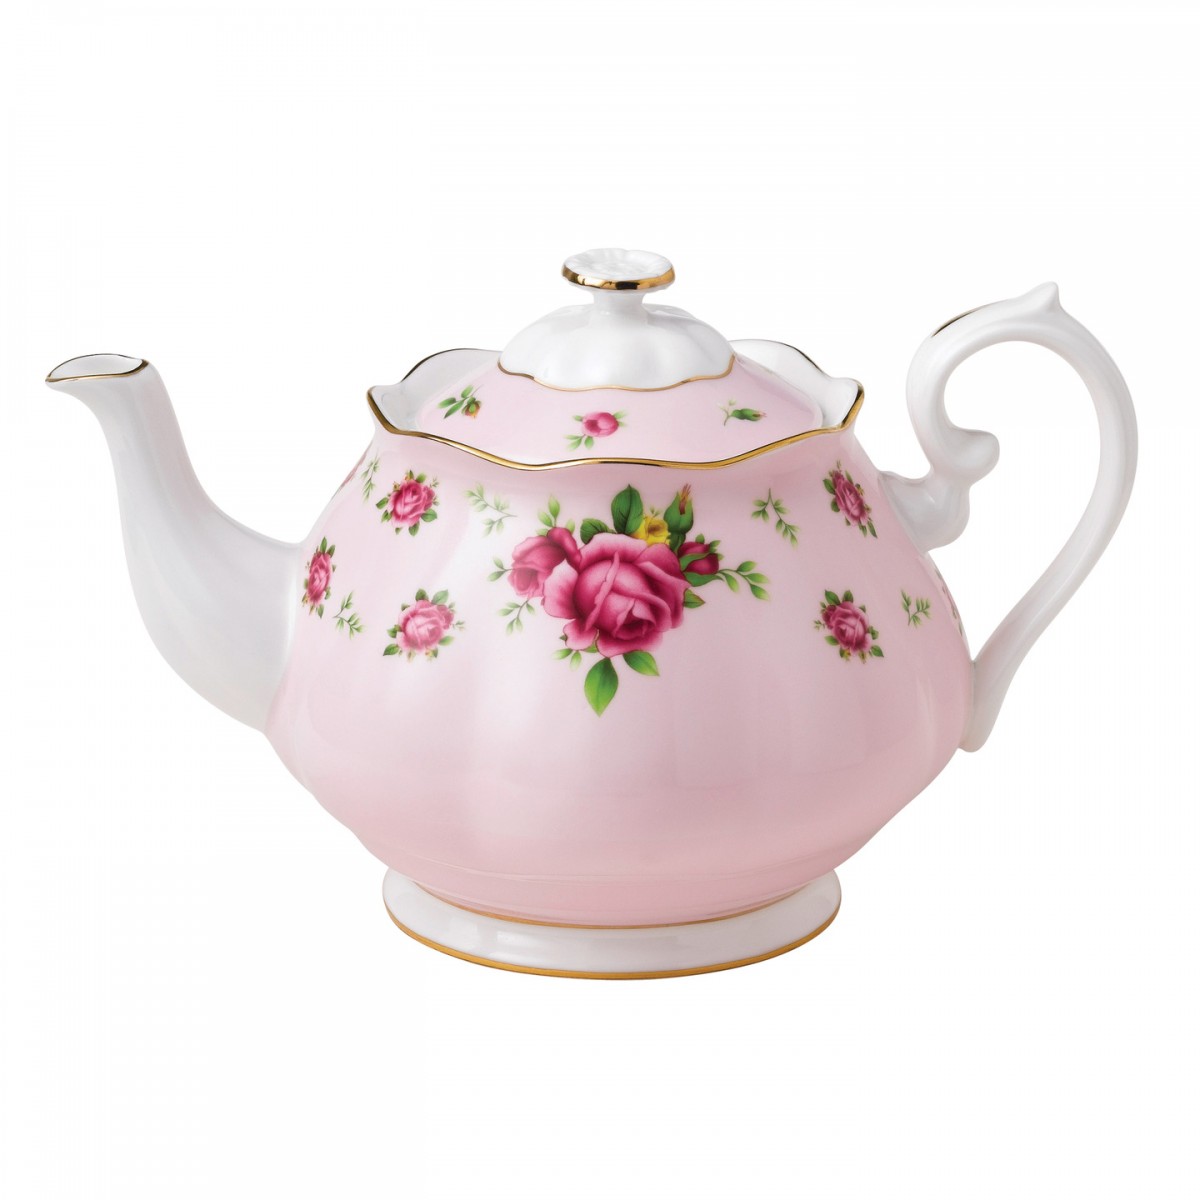 Pink Vintage Teapot Clipart